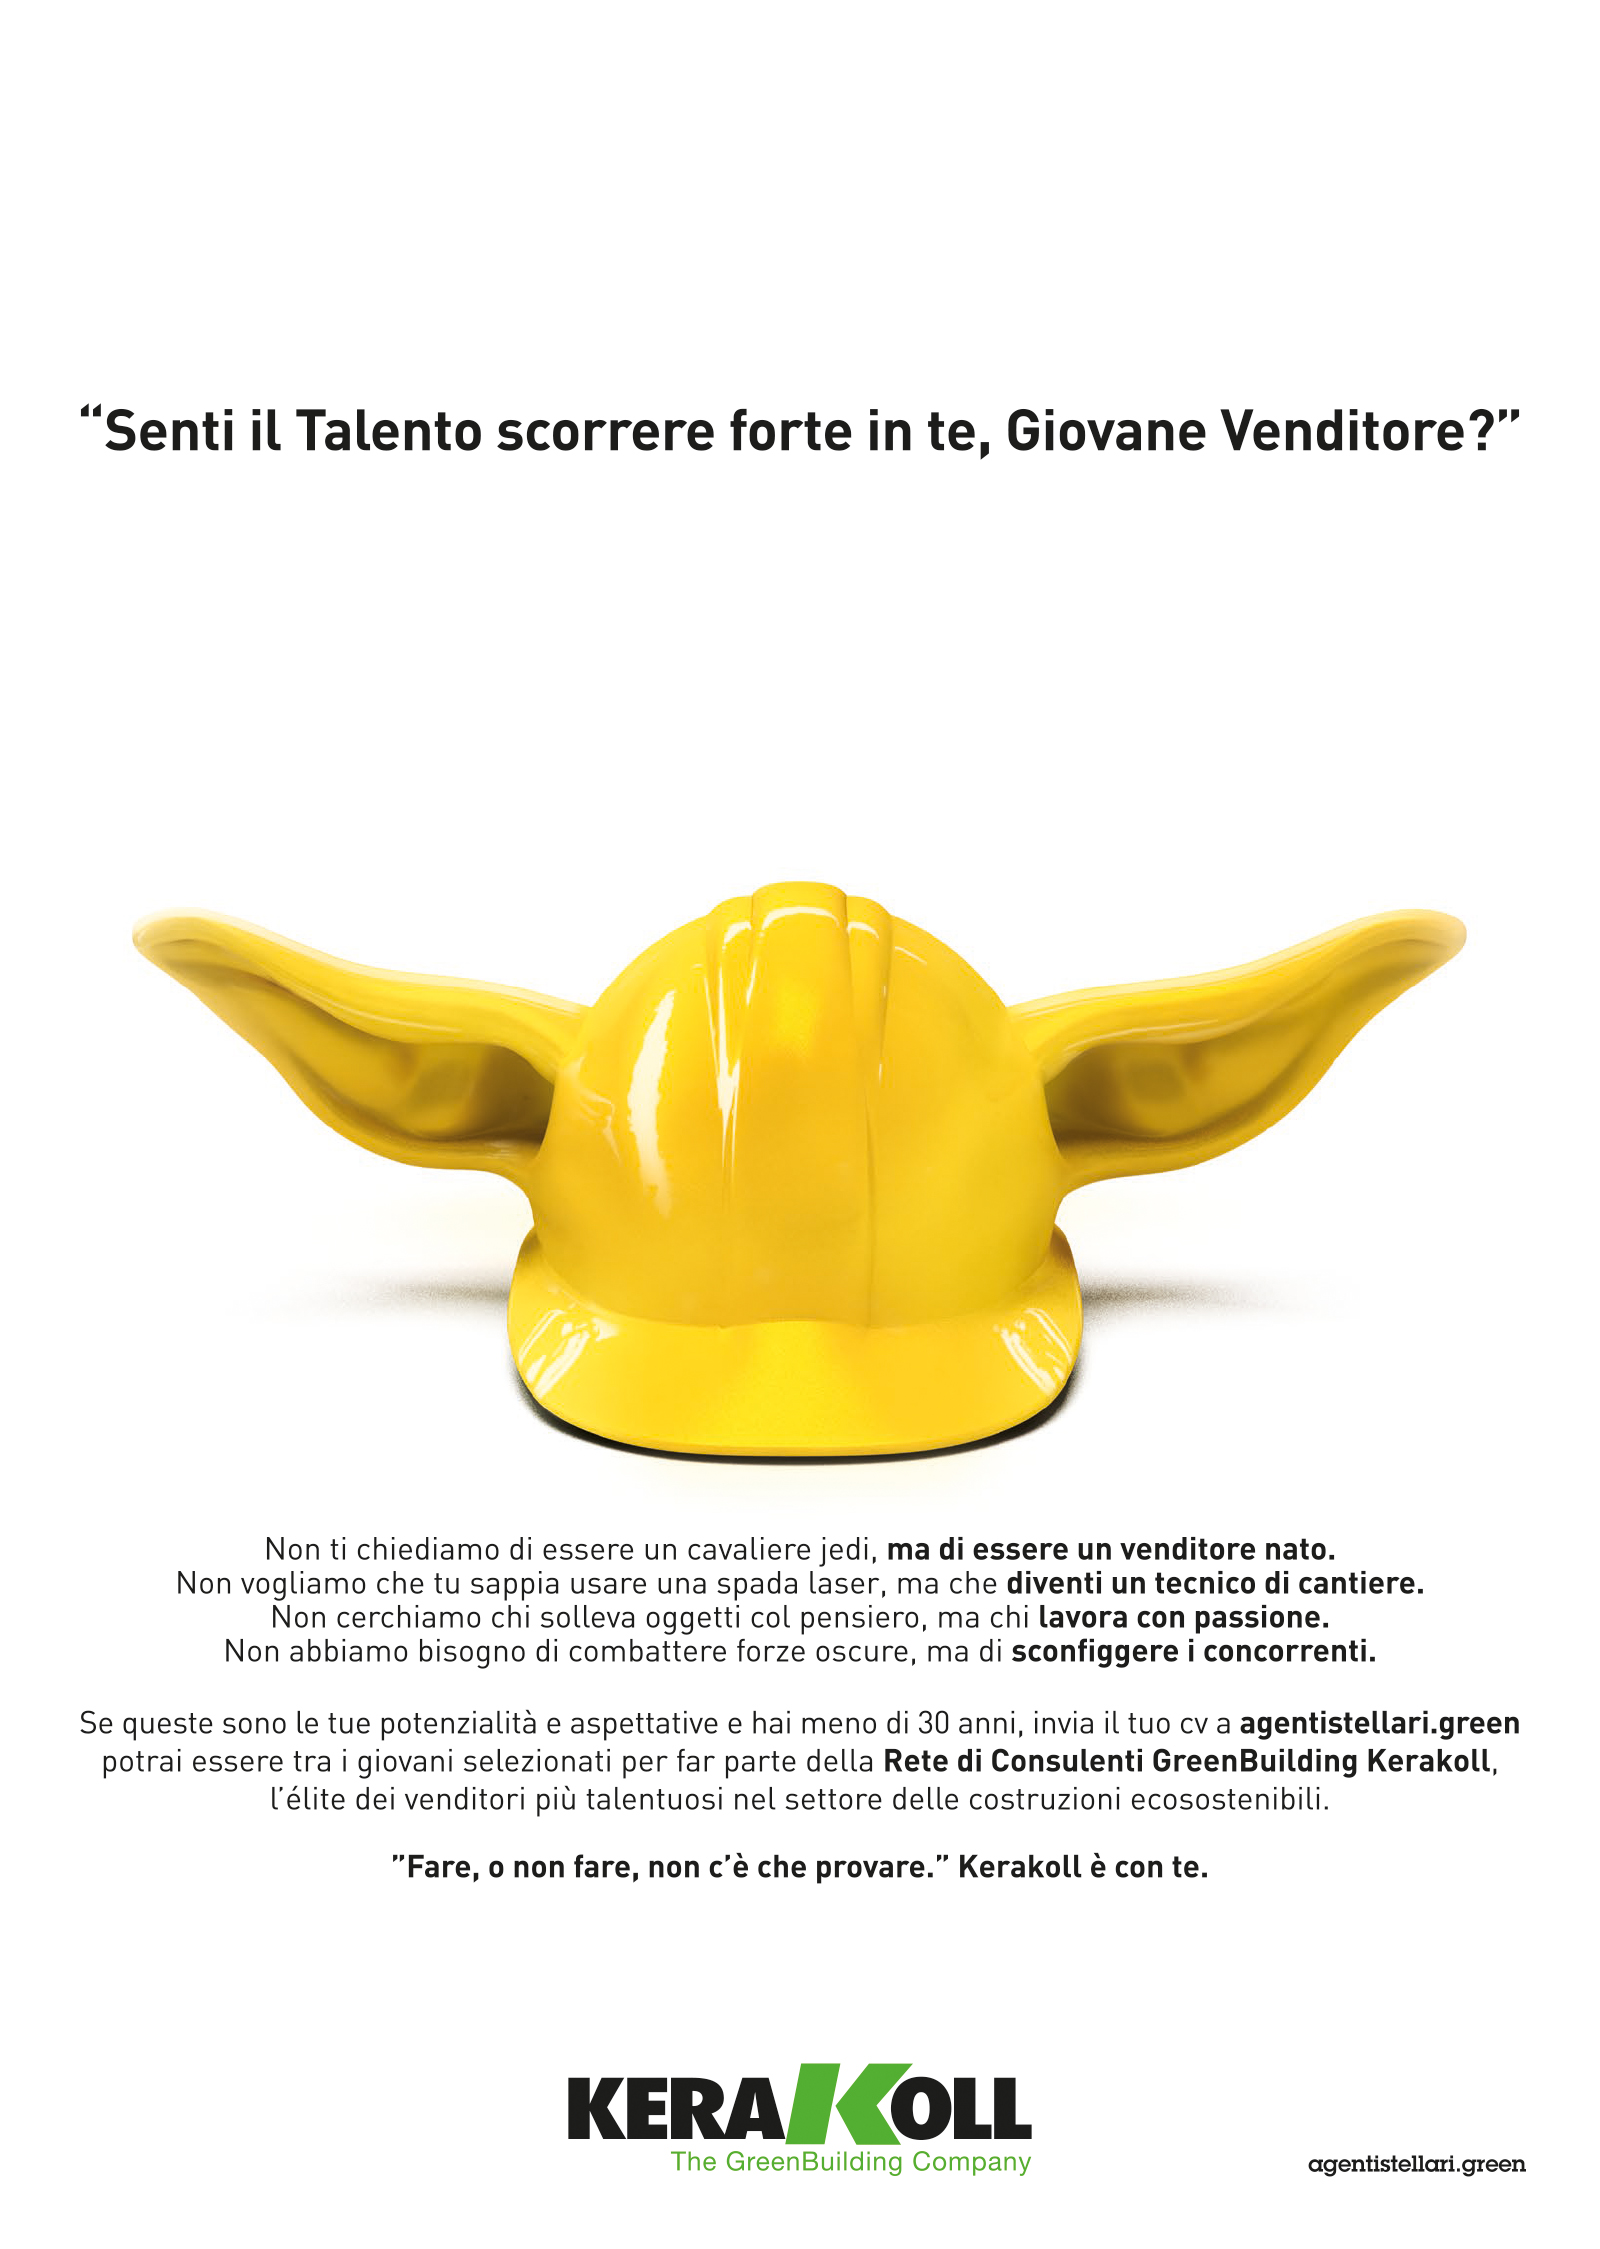 Menabò, communication agency in Forlì - KeraKoll - Italian ADV campaign